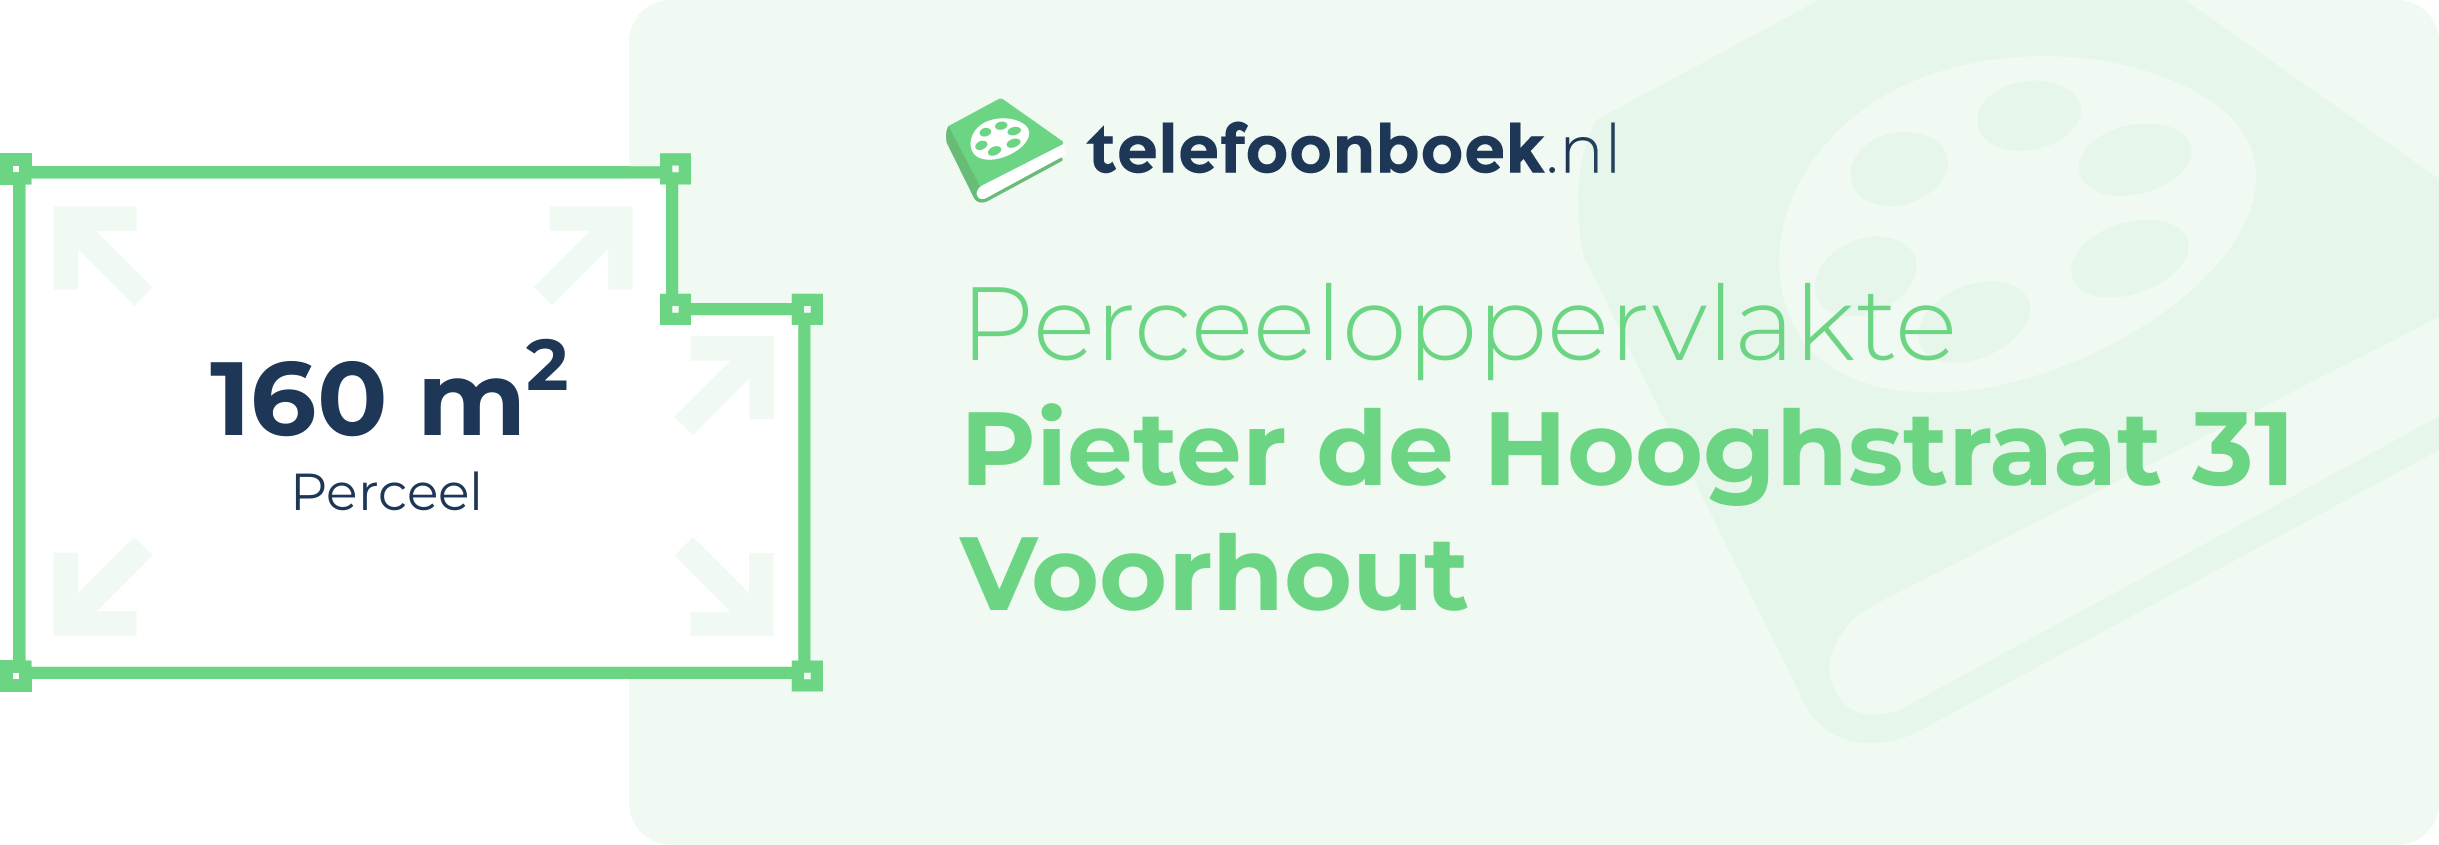 Perceeloppervlakte Pieter De Hooghstraat 31 Voorhout